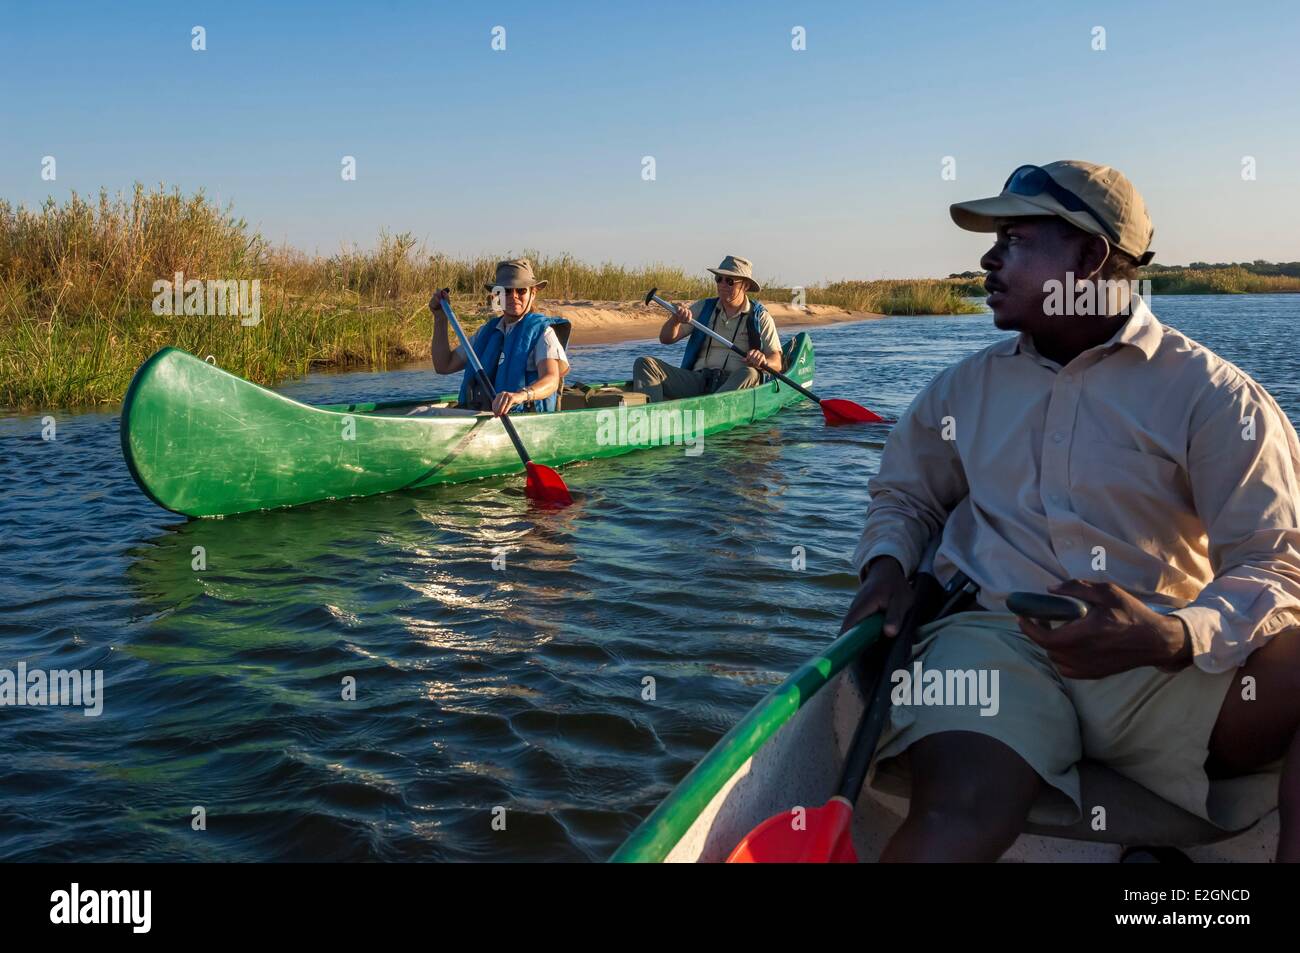 Zimbabwe Mashonaland West Province Mana Pools National Park listed as World Heritage by UNESCO Ruckomechi camp canoe safari on Zambezi river Stock Photo